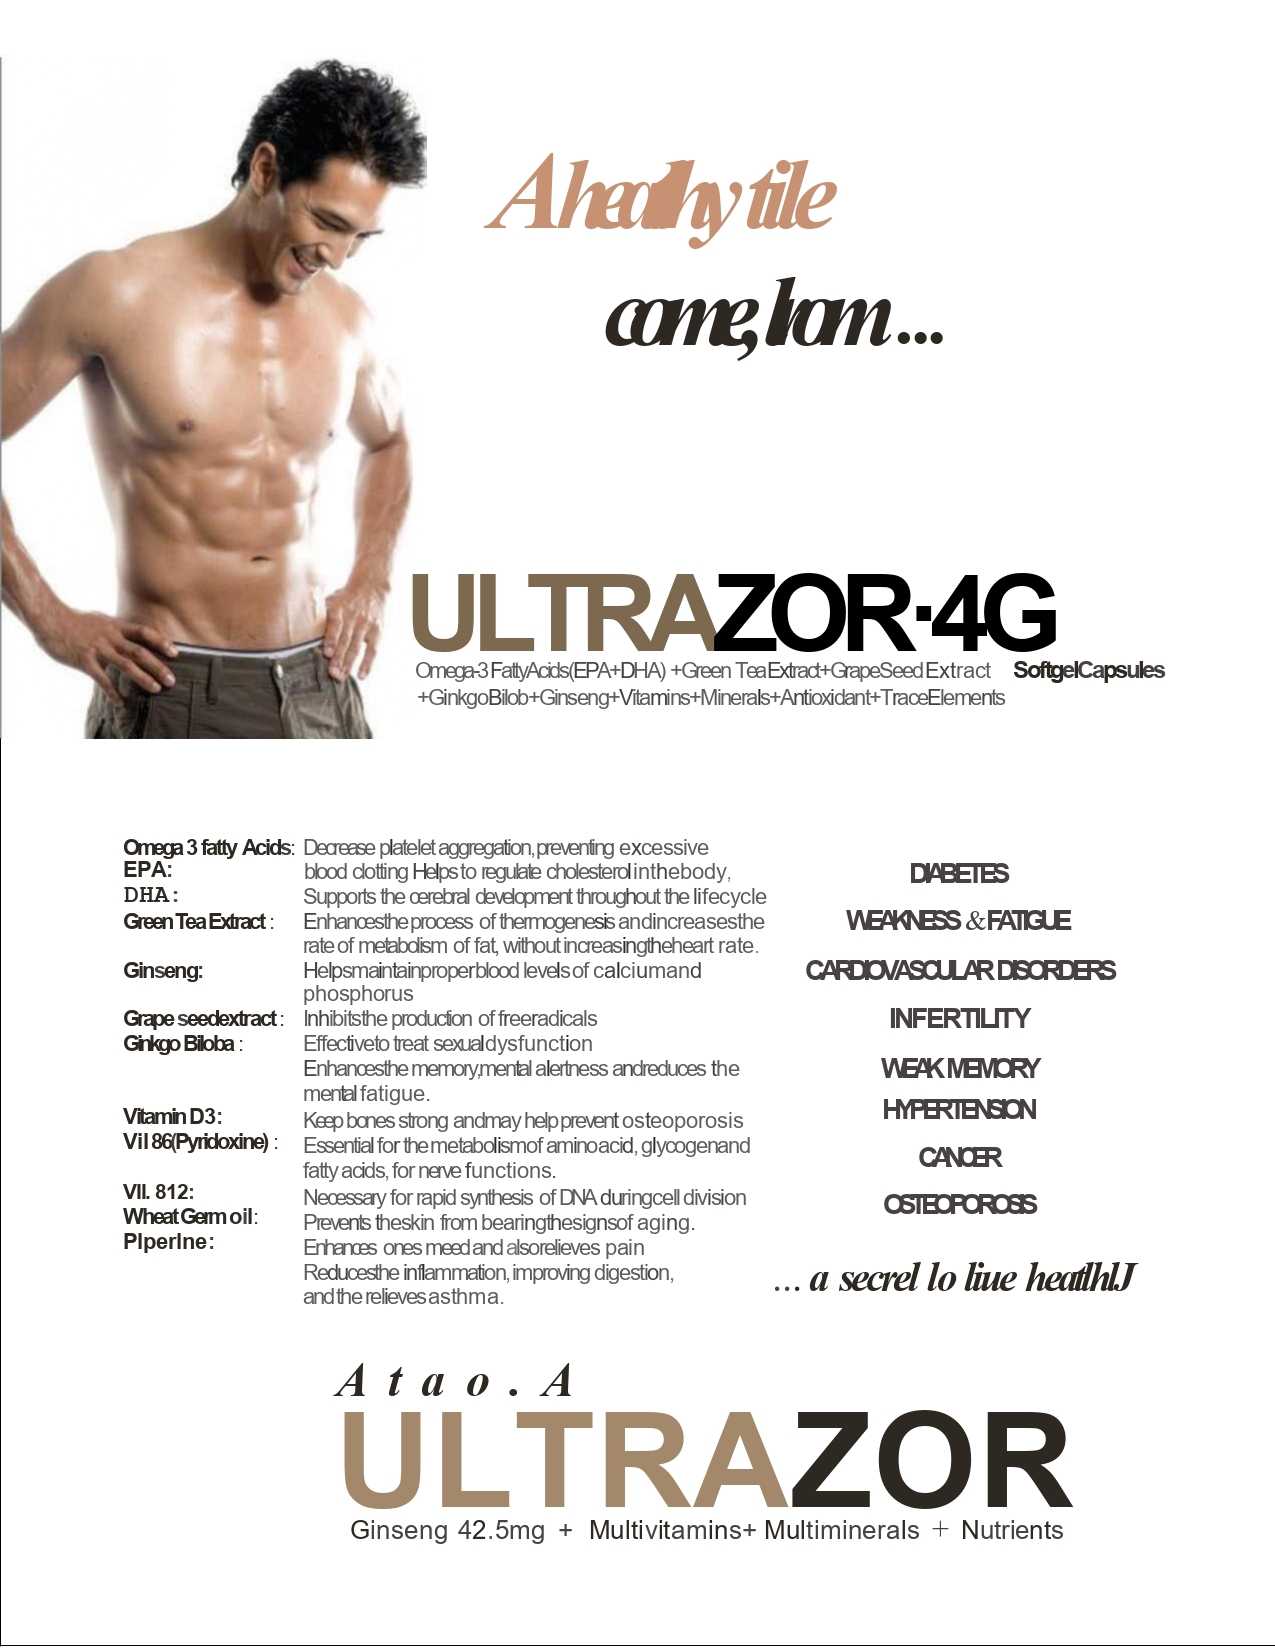 Ultrazor-4G (DRUG)